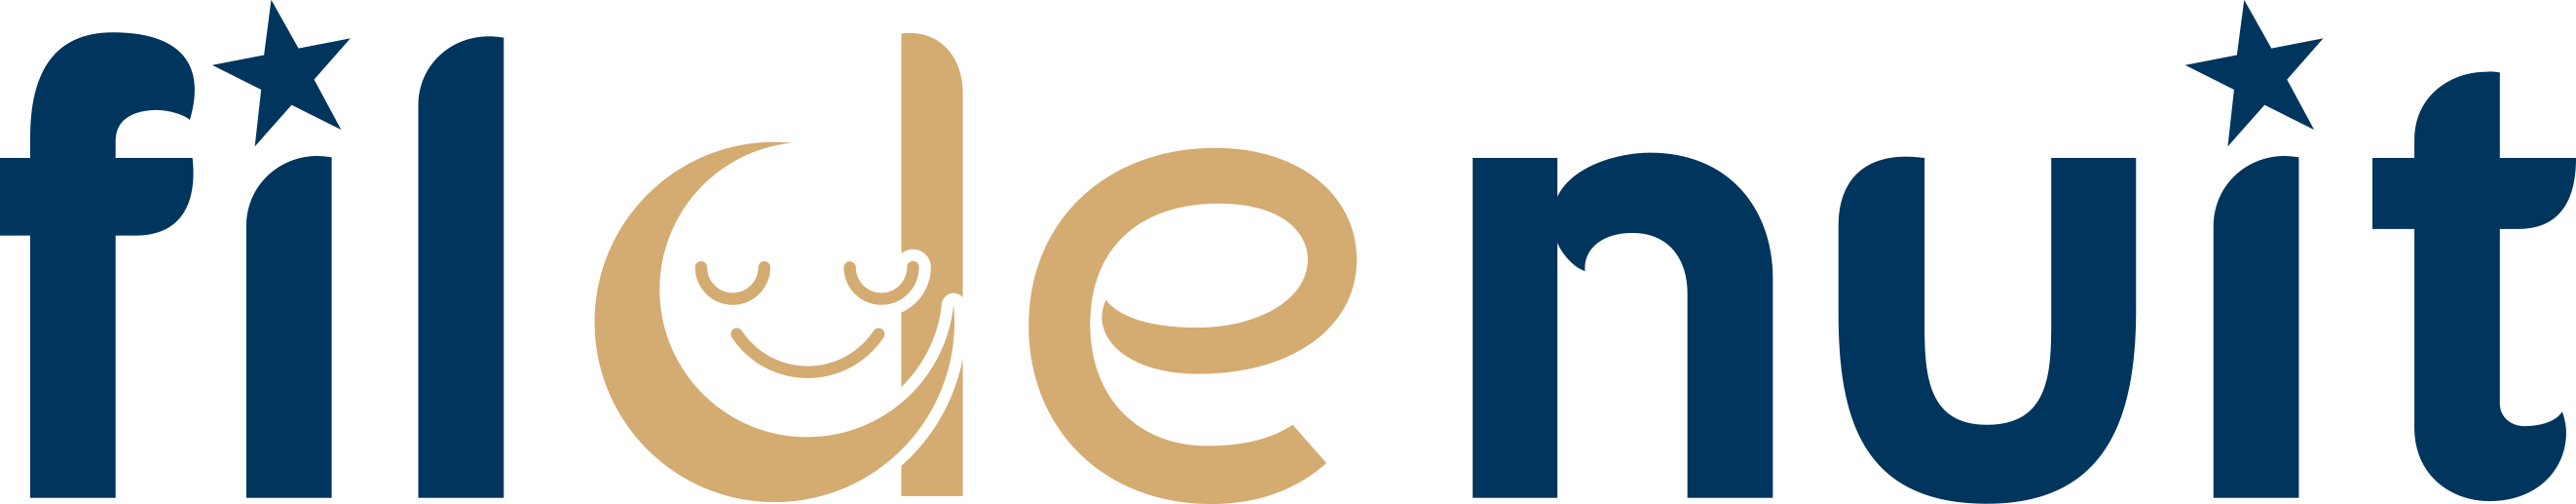 logo Fildenuit